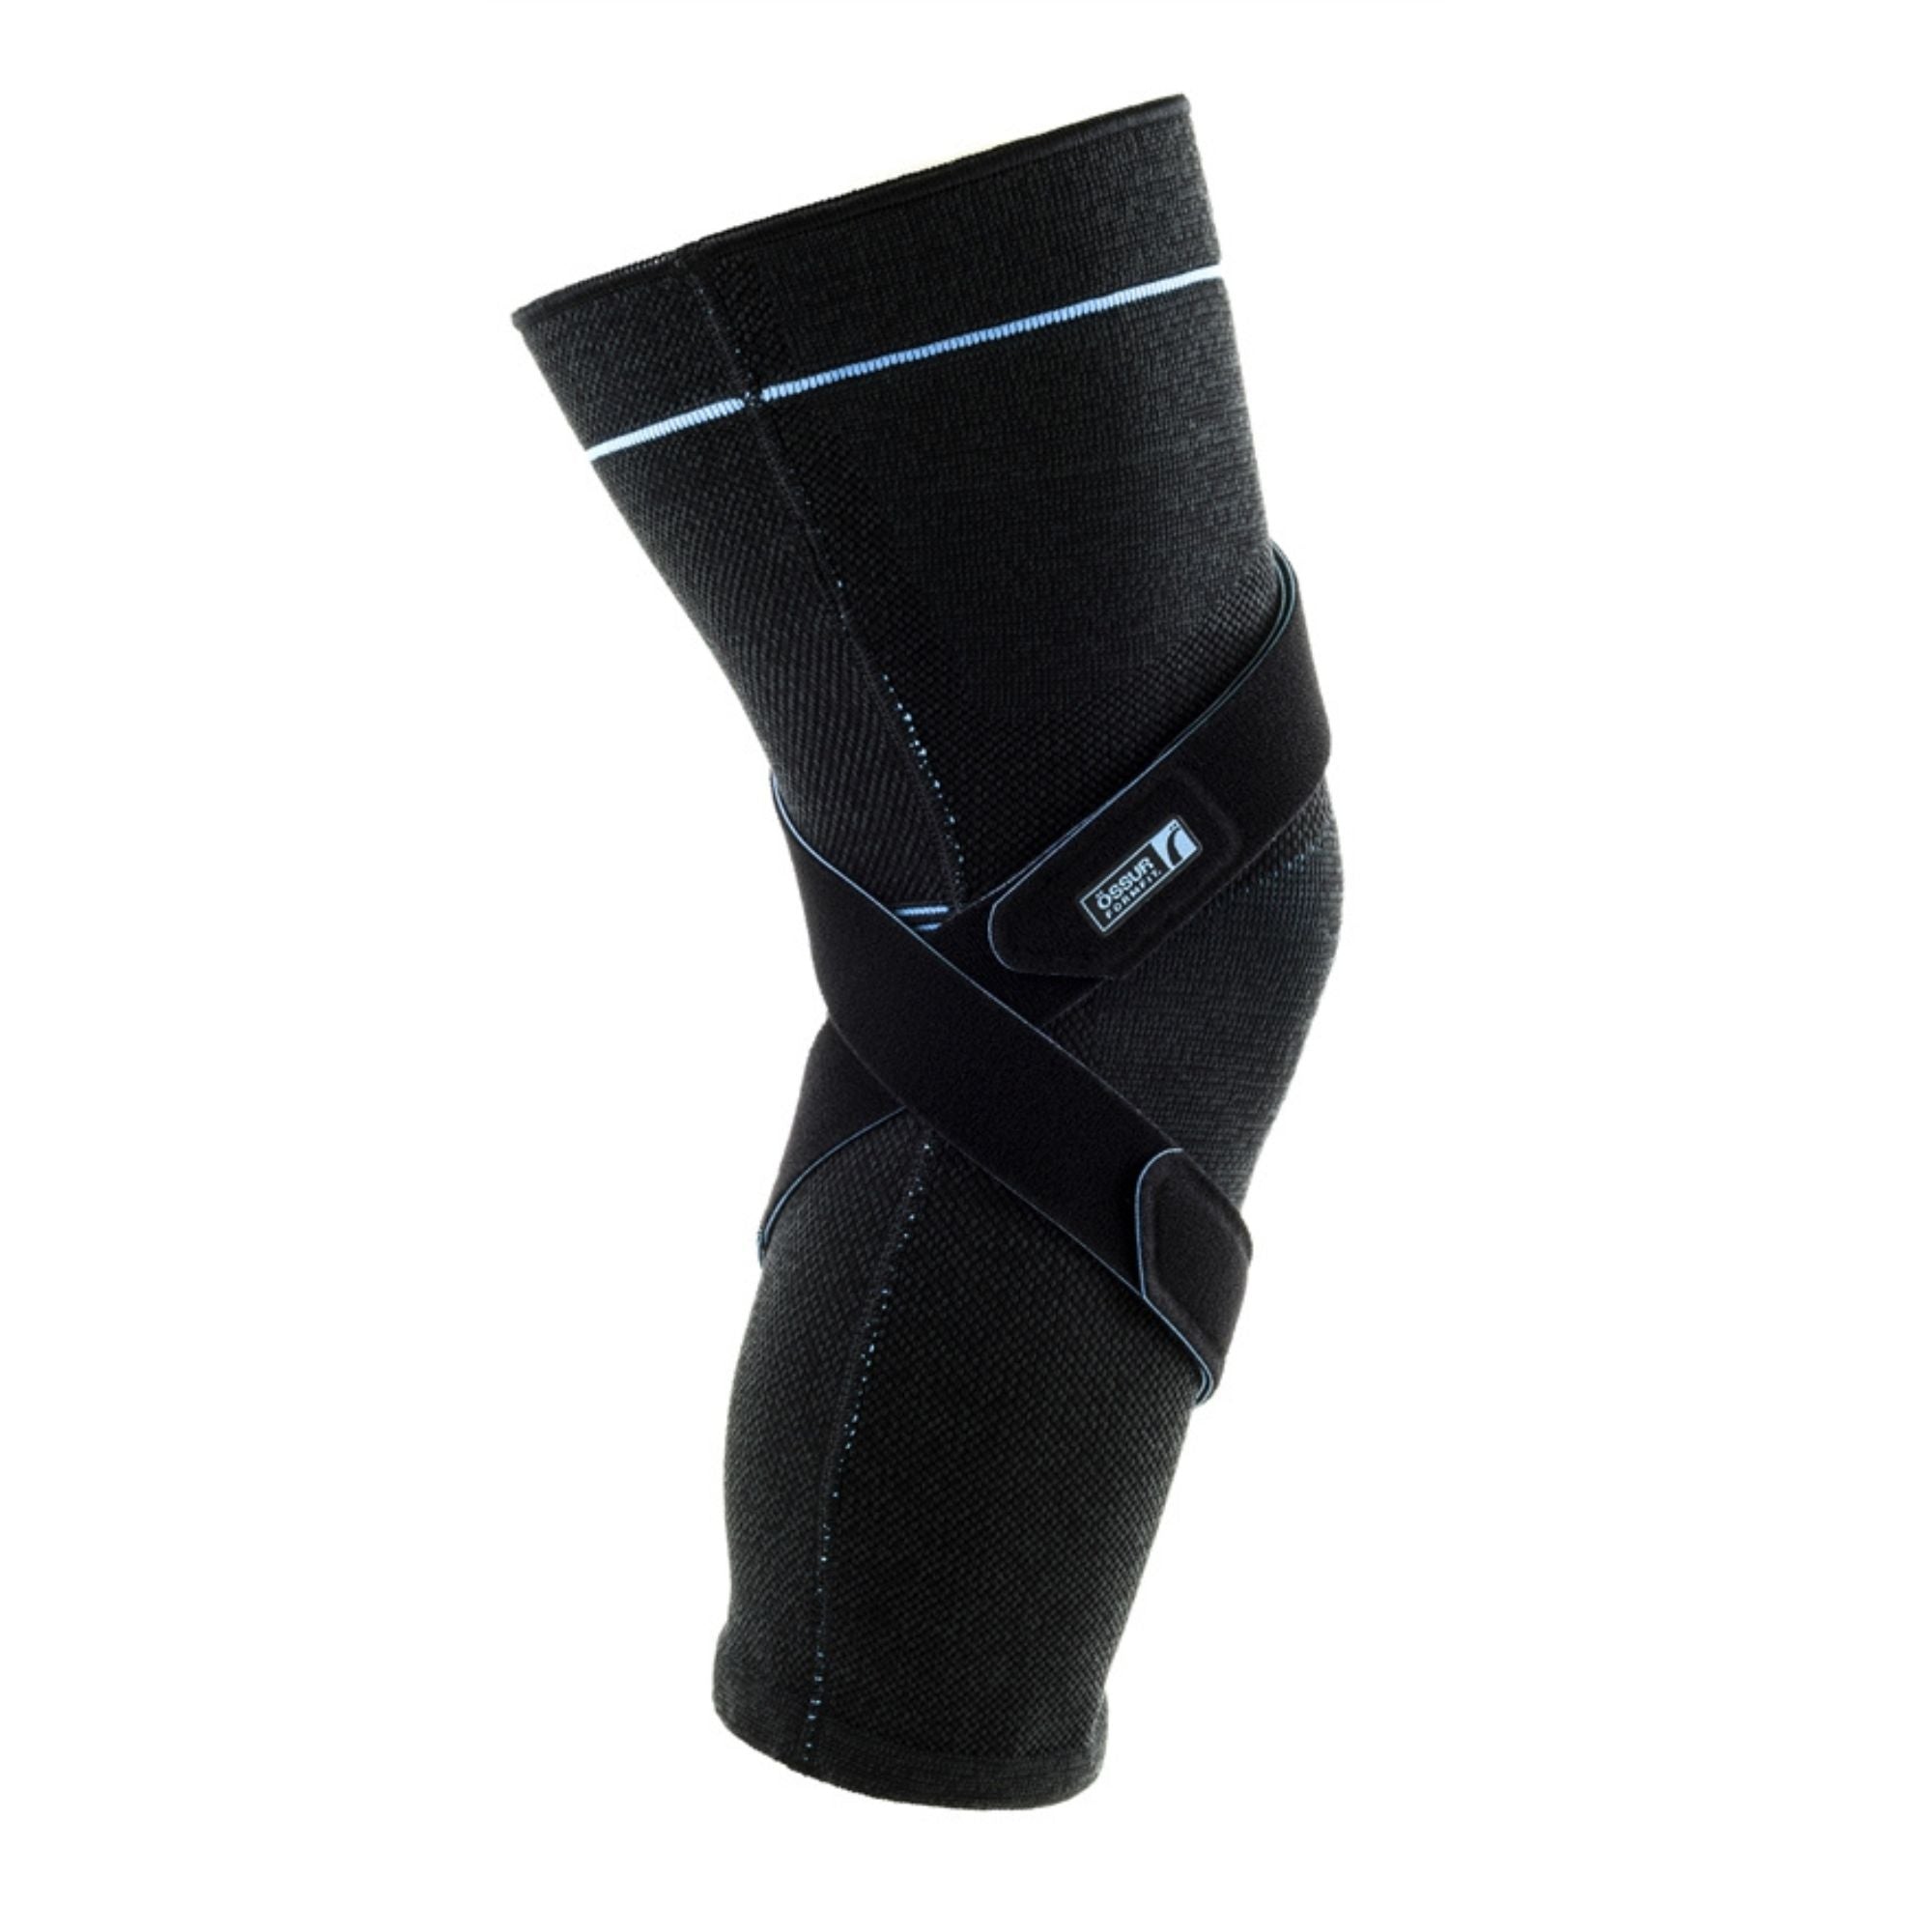 Ossur Formfit Pro Knee OA - Knee Brace for Osteoarthiritis